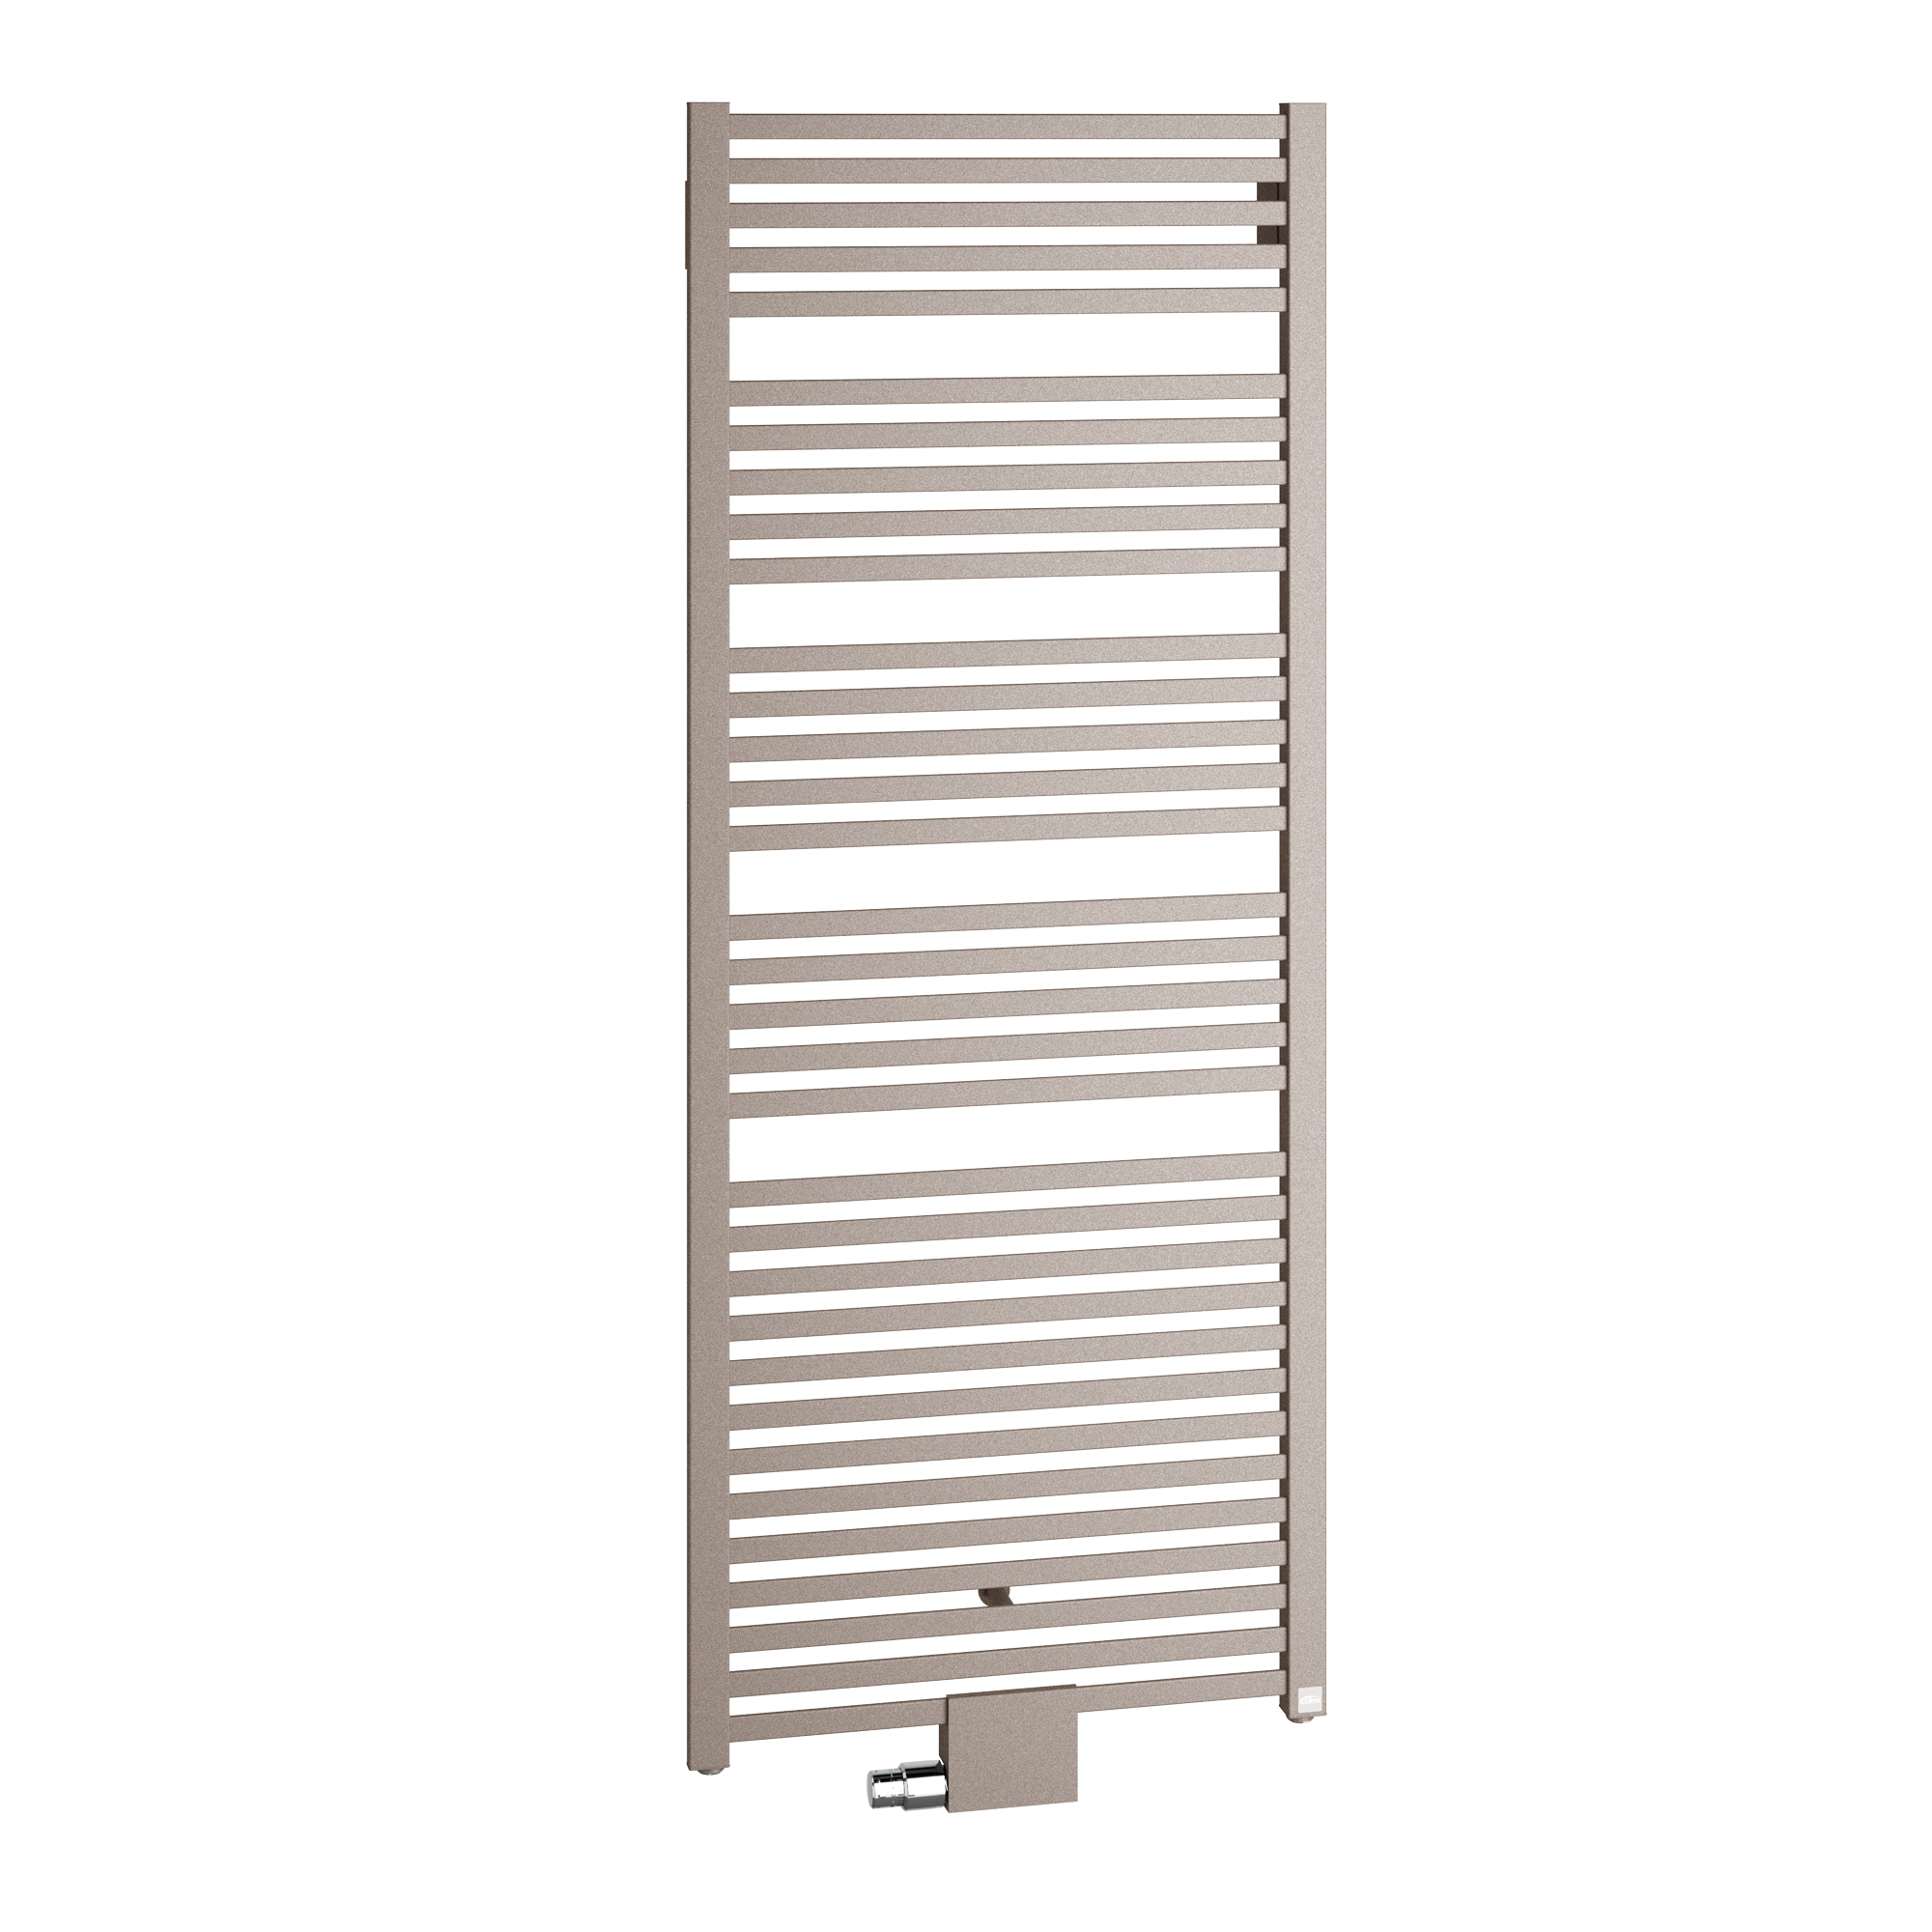 Kermi Geneo quadris dizaino radiatoriai - rankšluosčių džiovintuvai